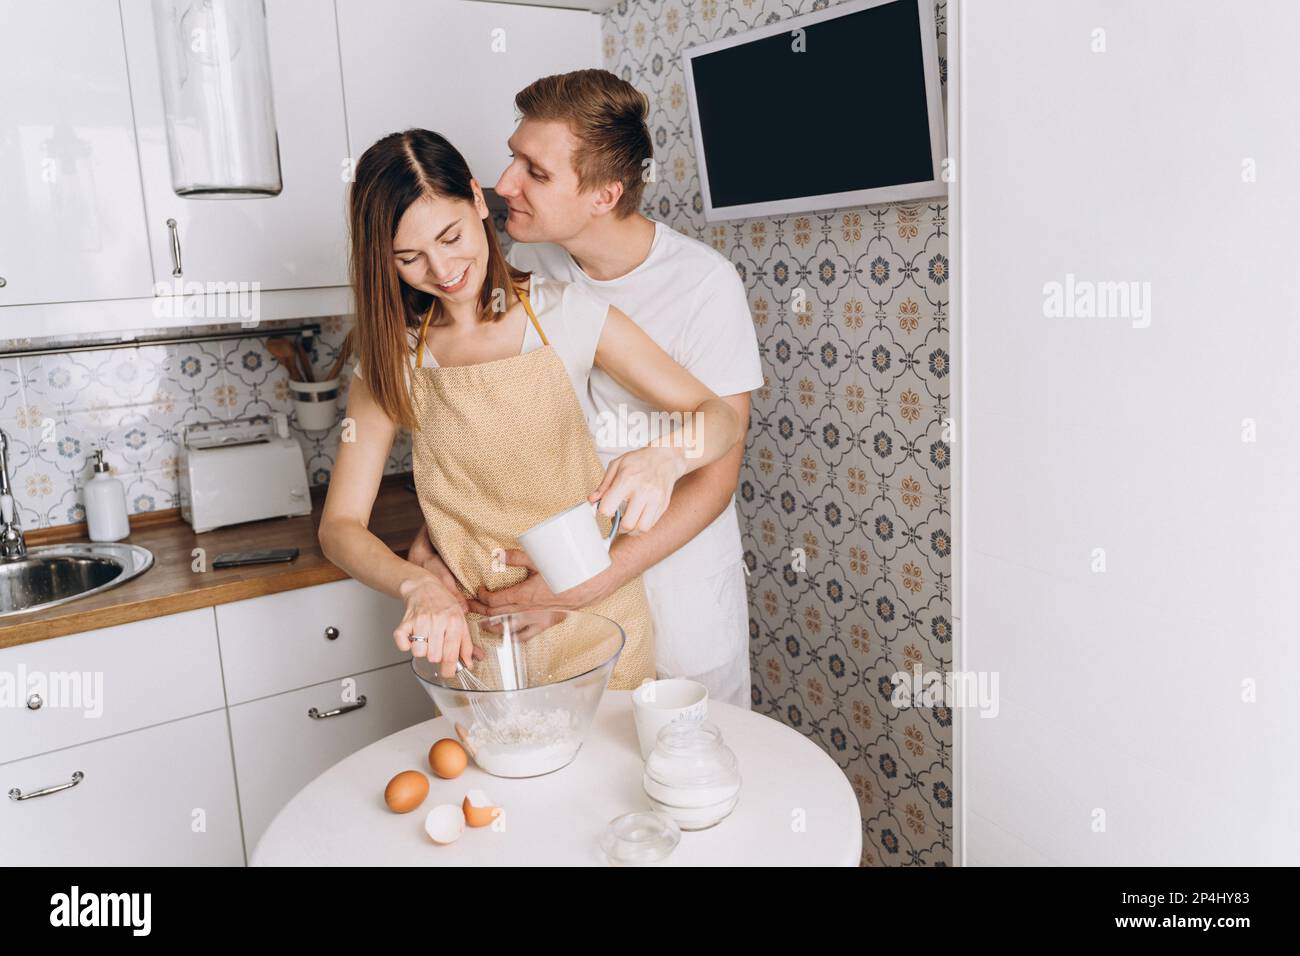 Un couple affectueux cuisine des crêpes dans la cuisine et des câlins Banque D'Images